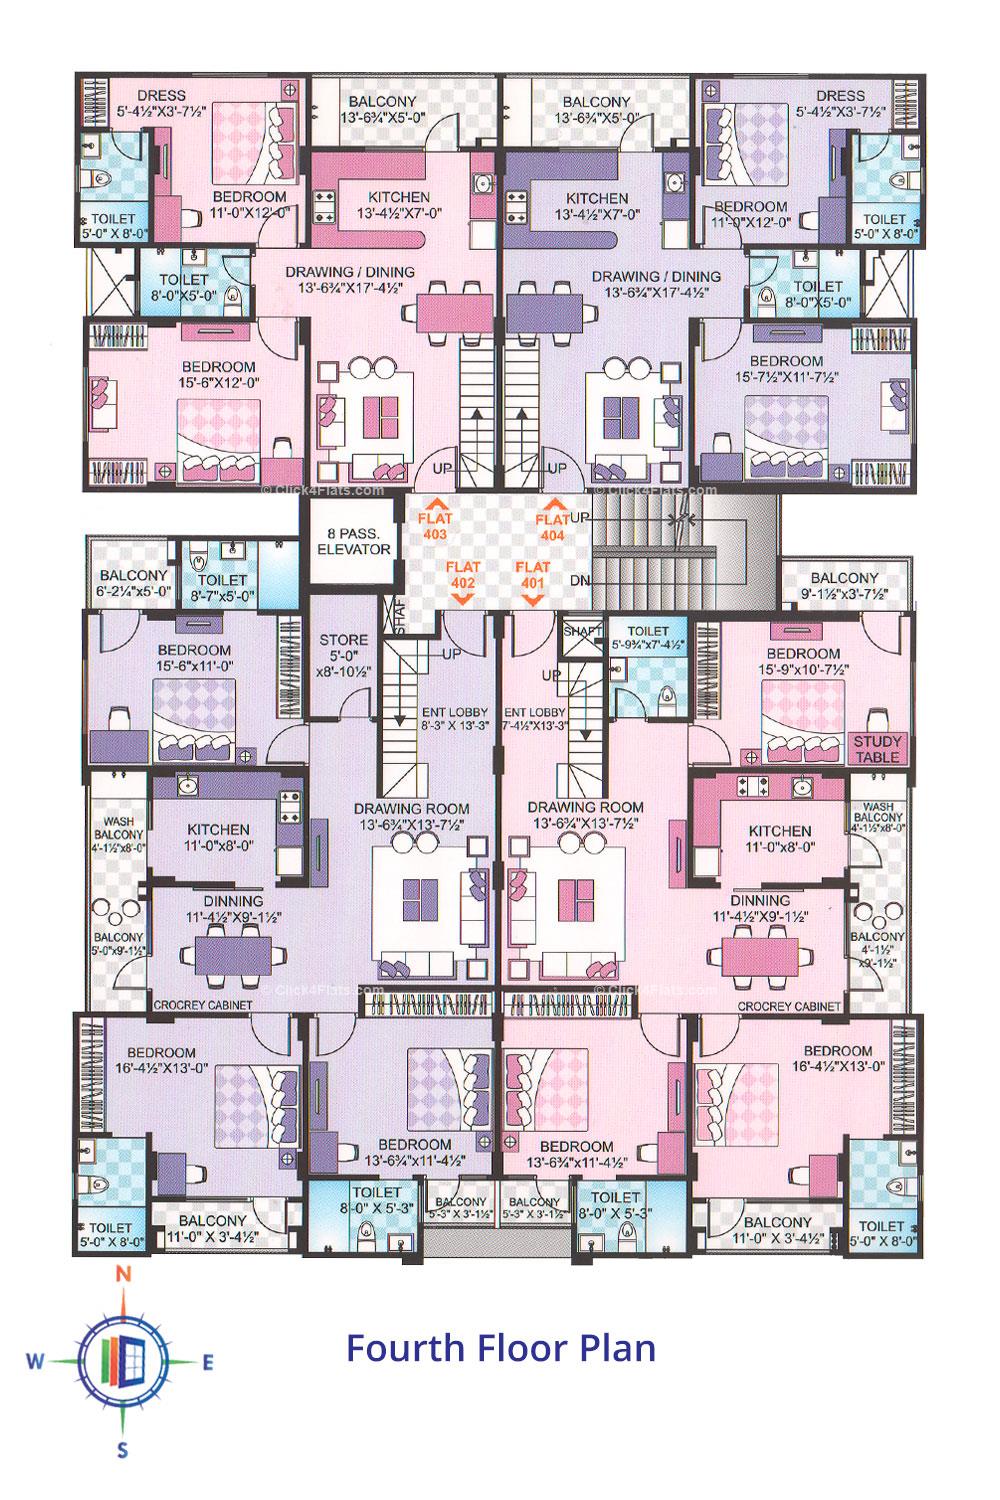 Luxuria Fourth Floor Plan